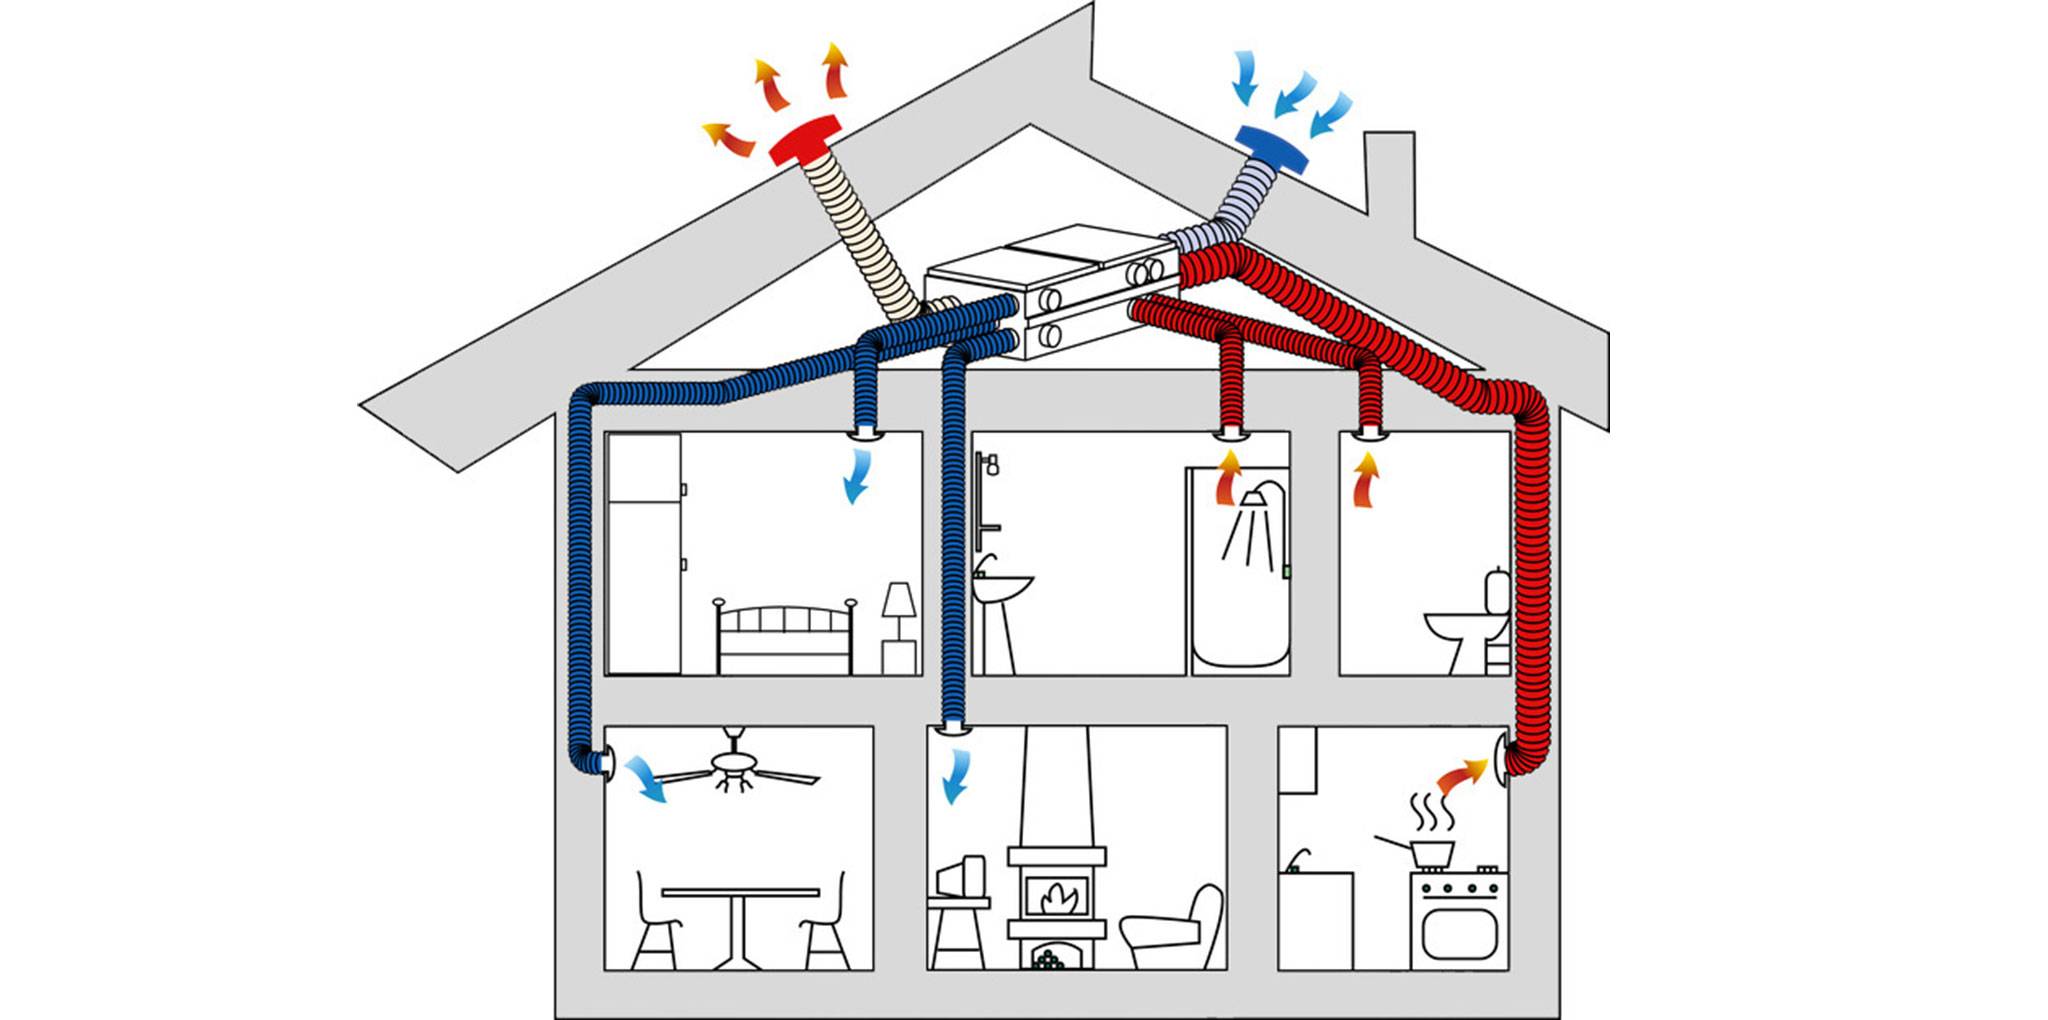 Вентиляция в частном доме своими руками: схема устройства